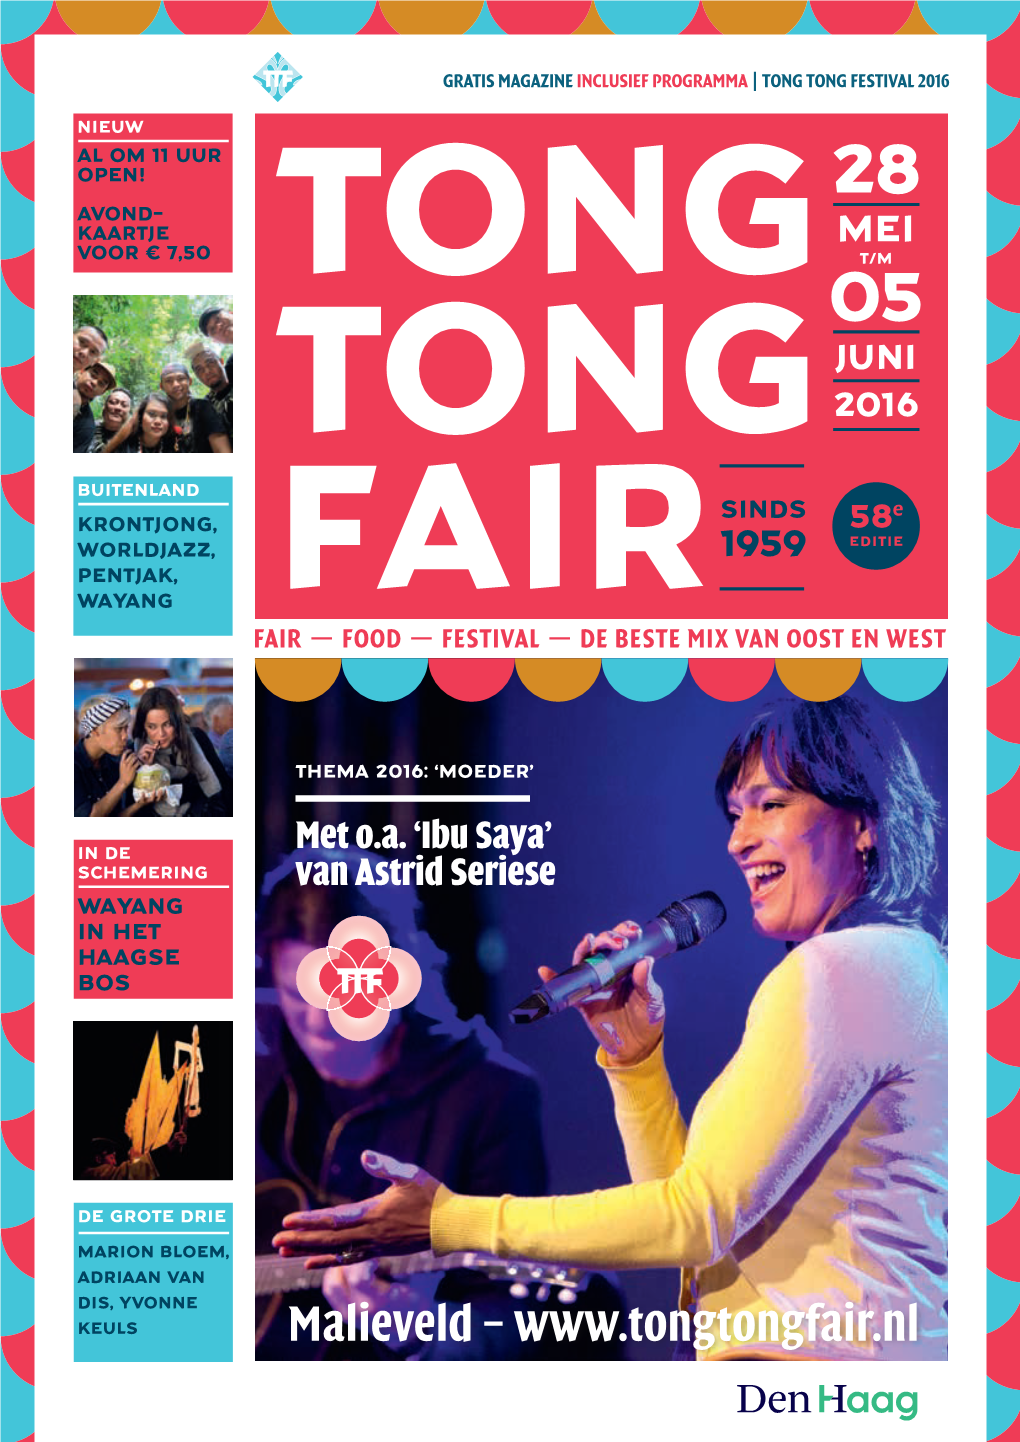 Malieveld – Toegangsprijzen 58E Tong Tong Fair Meerdaagse Pasarpassen DAGKAARTEN Dagkaarten Zijn Verkrijgbaar Aan De Kassa of in Onze Webwinkel